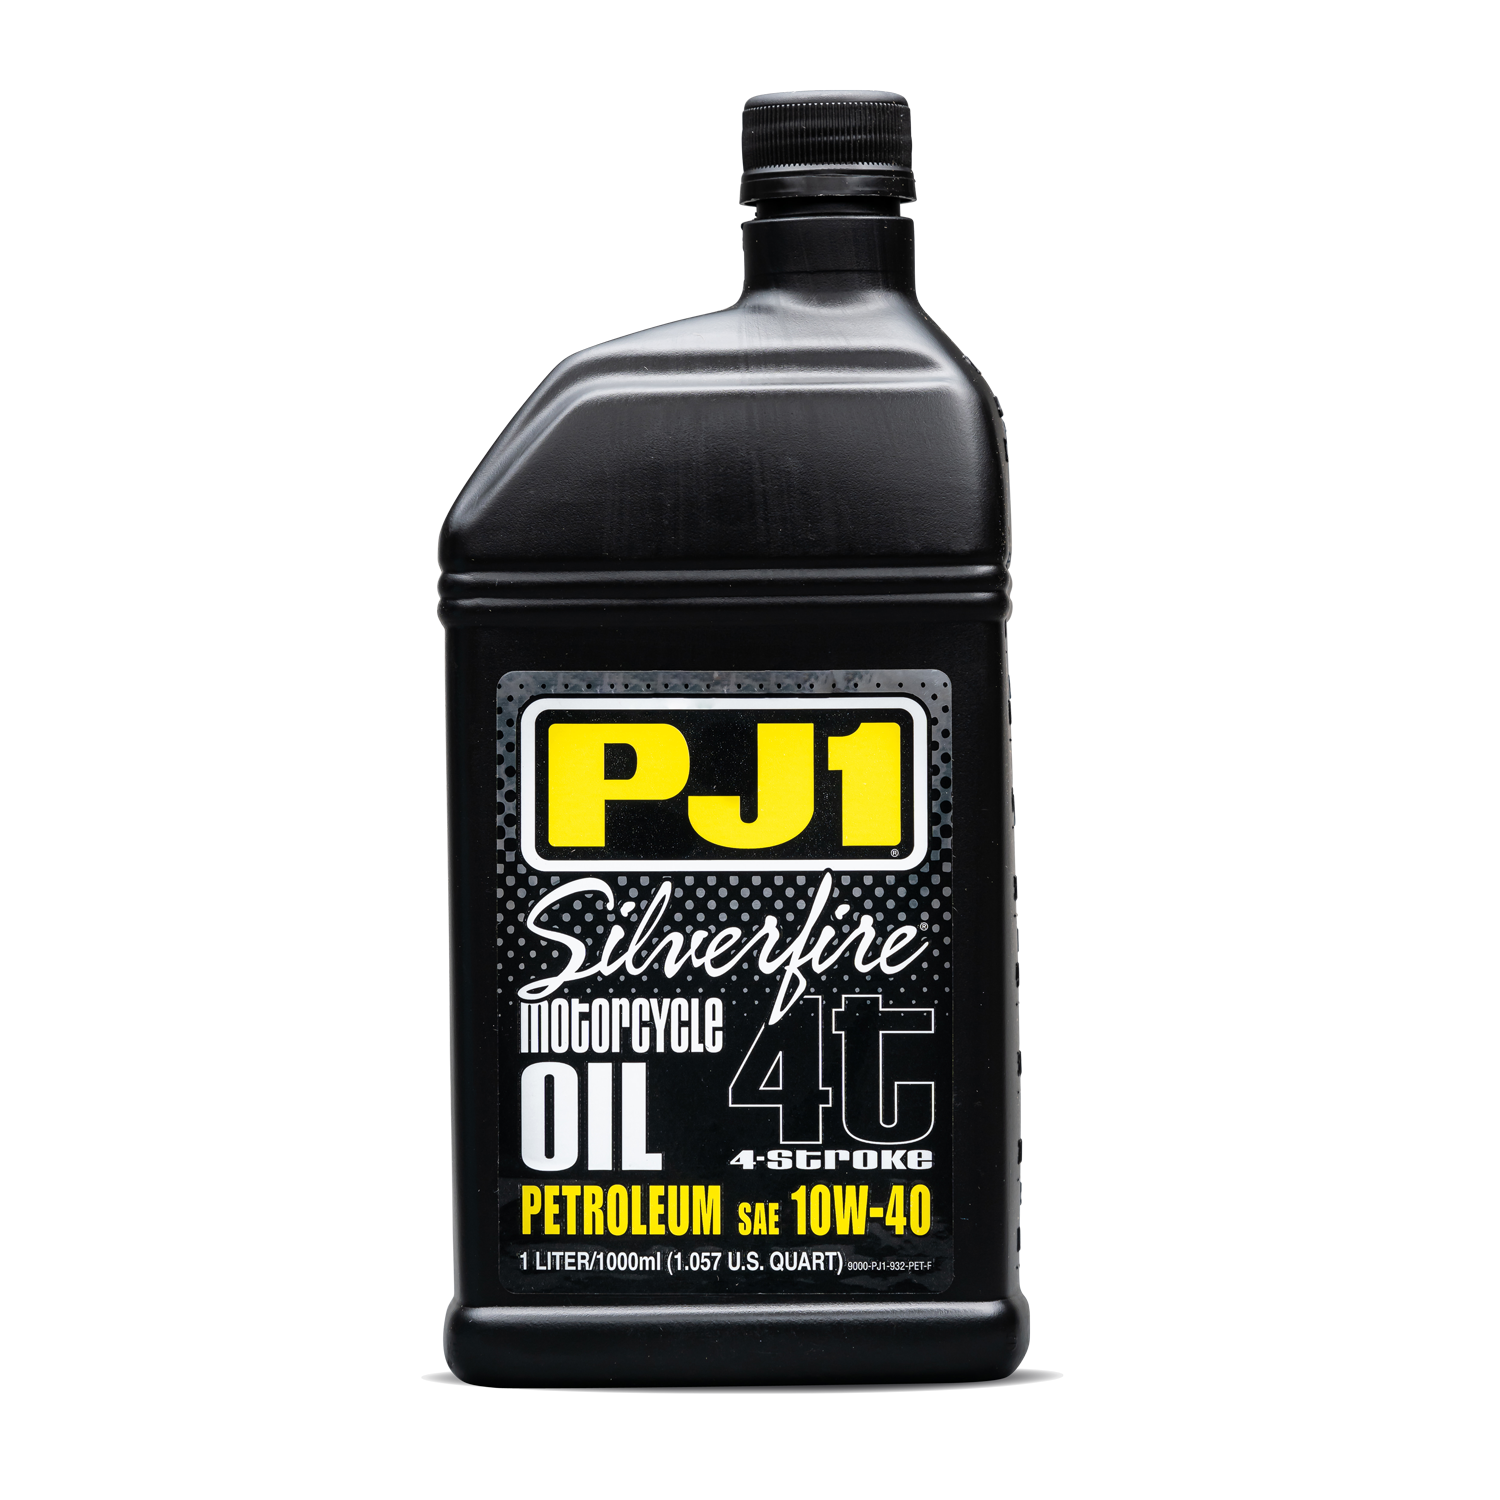 Silverfire Petroleum 4T Motor Oil - PJ1